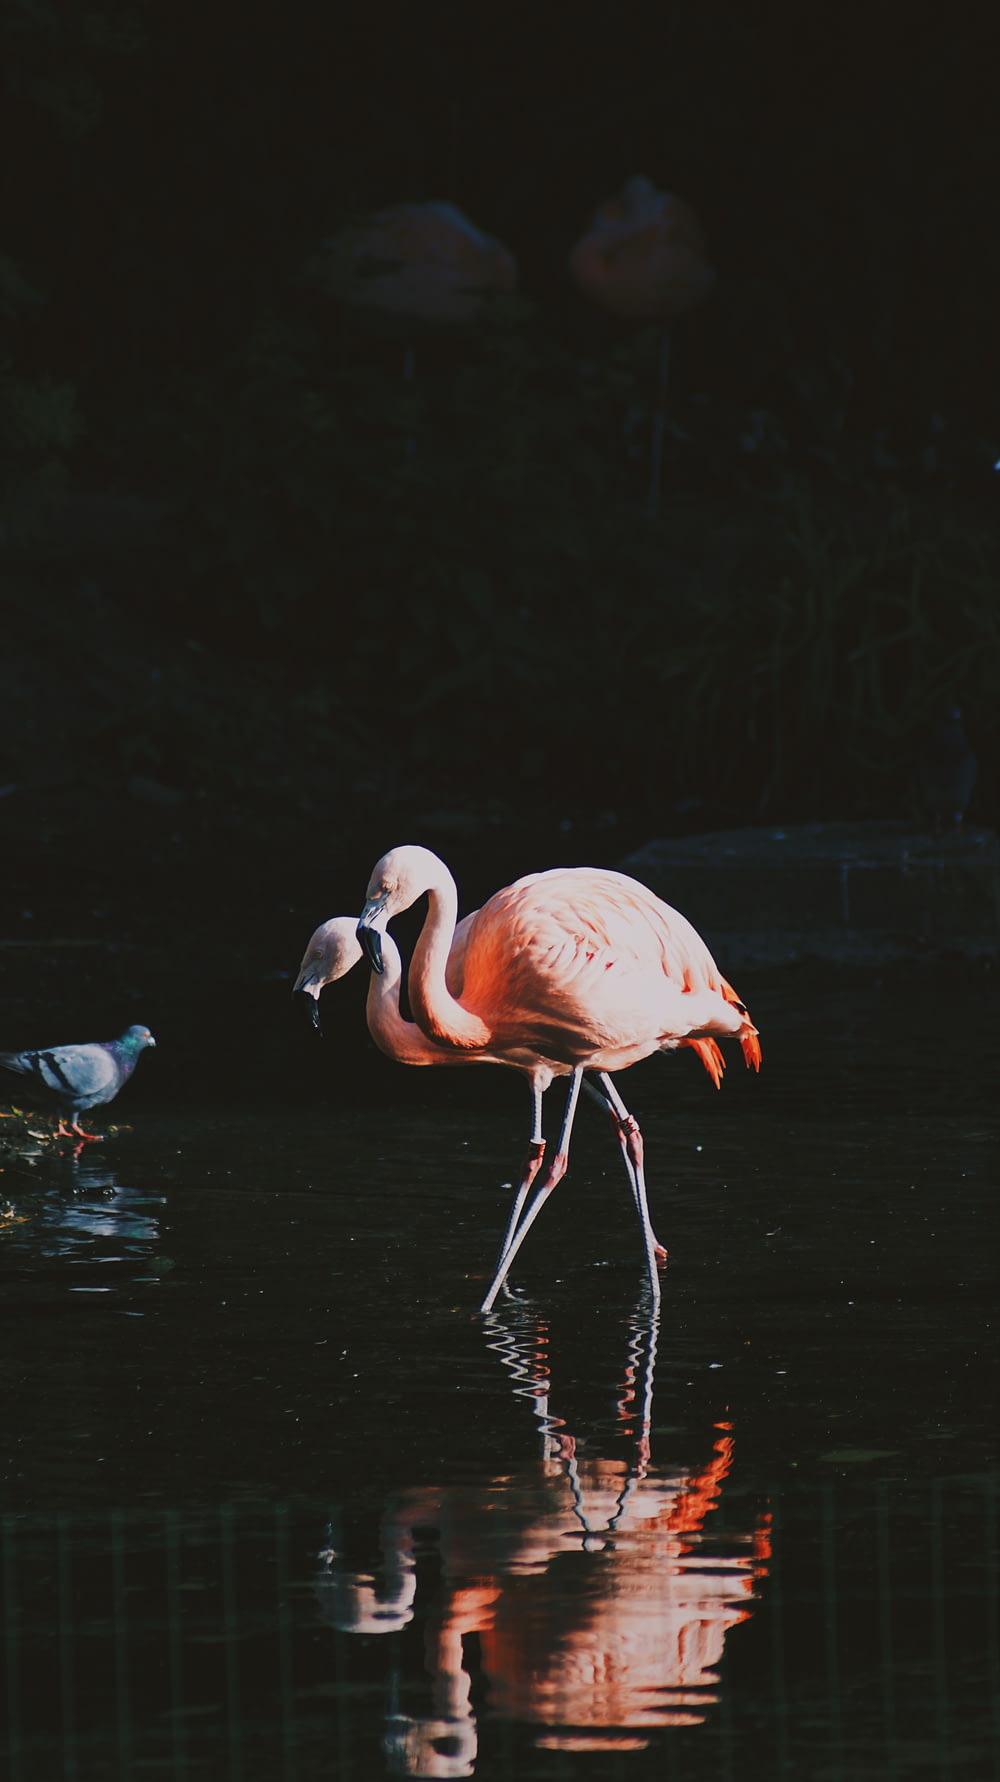 two lesser flamingos